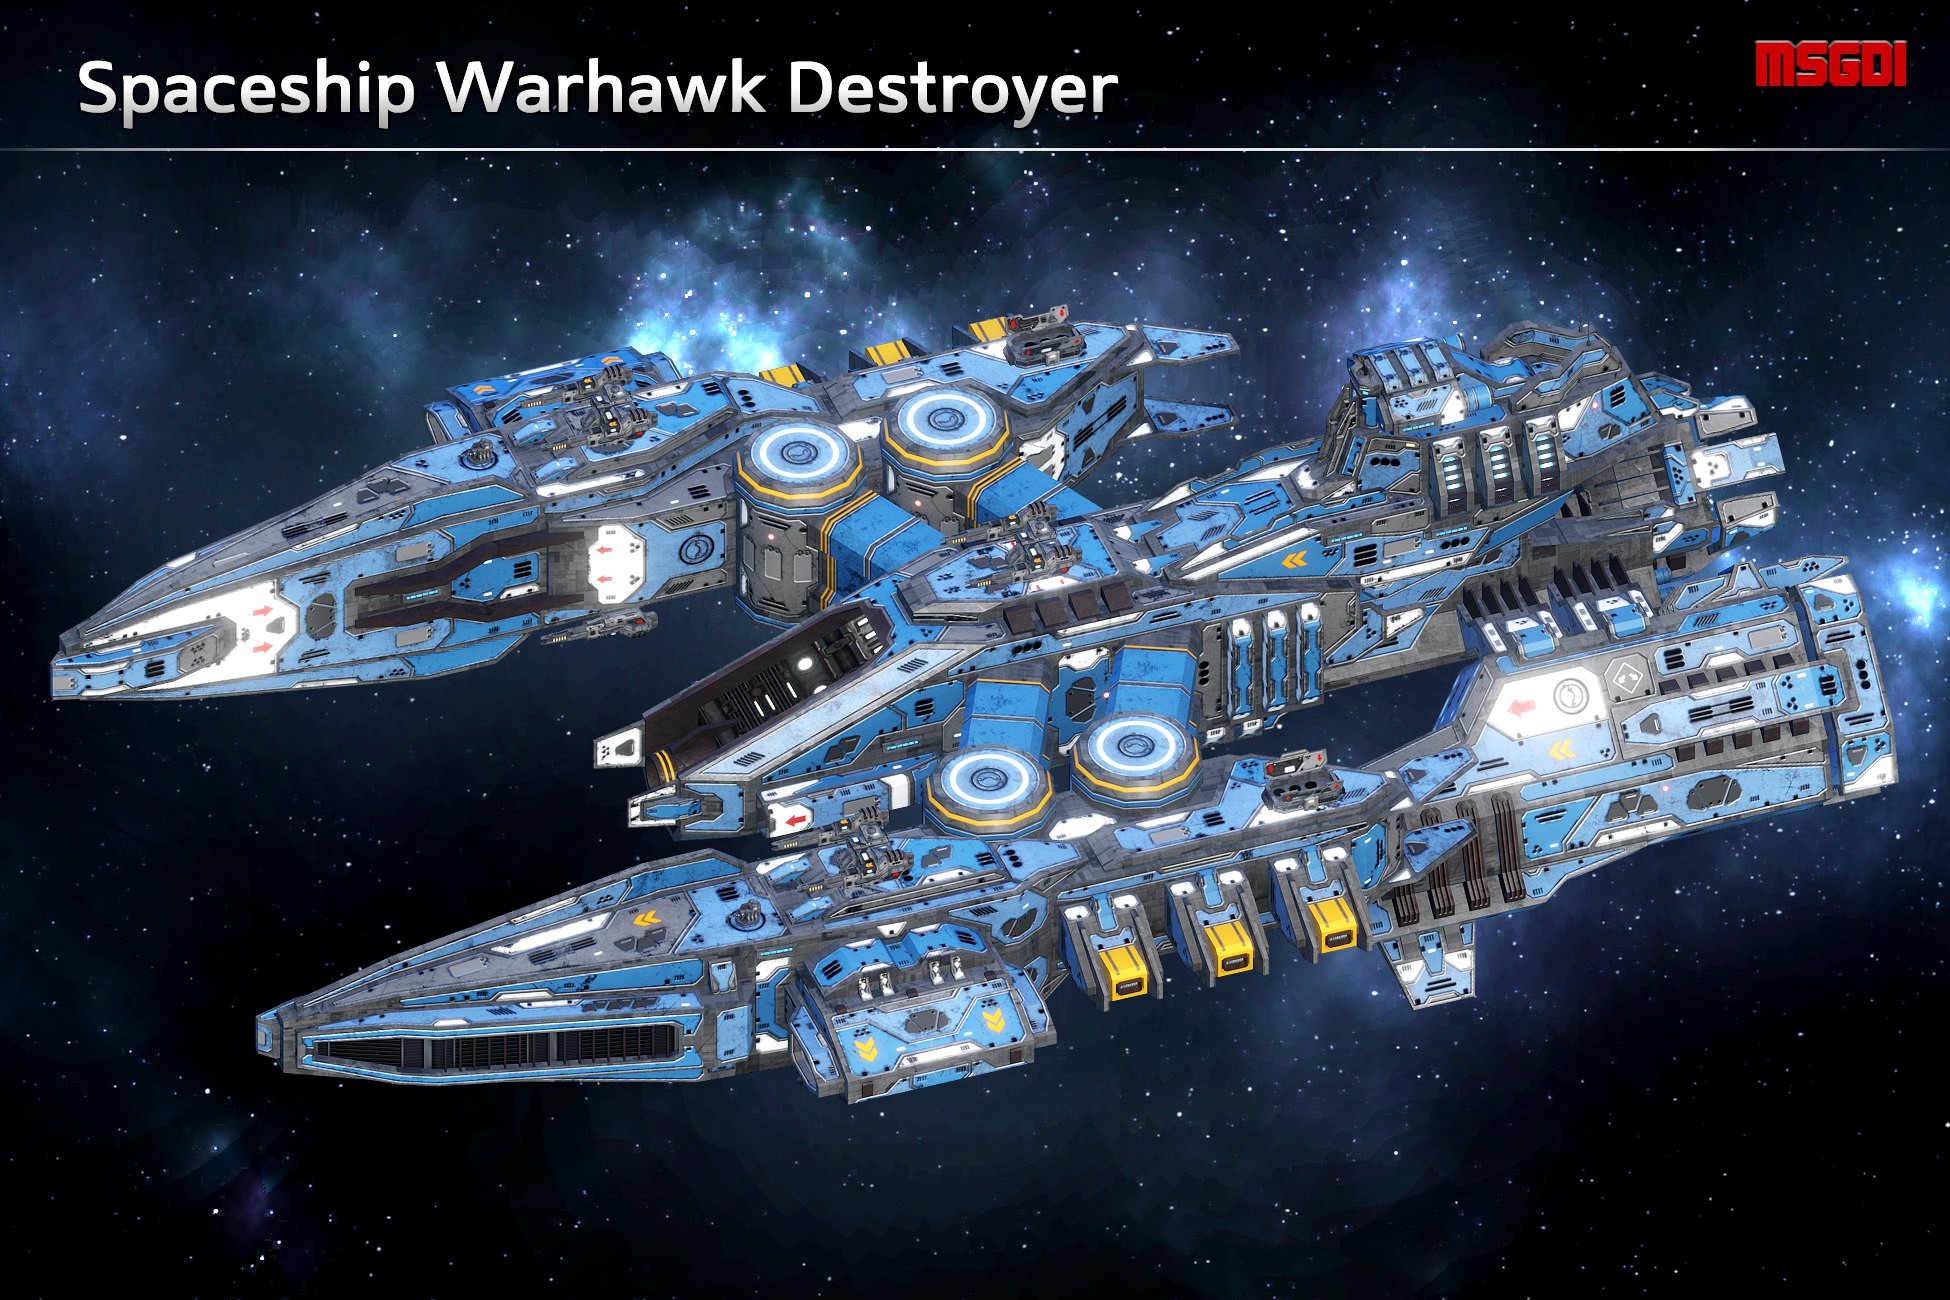 Spaceship Warhawk Destroyer